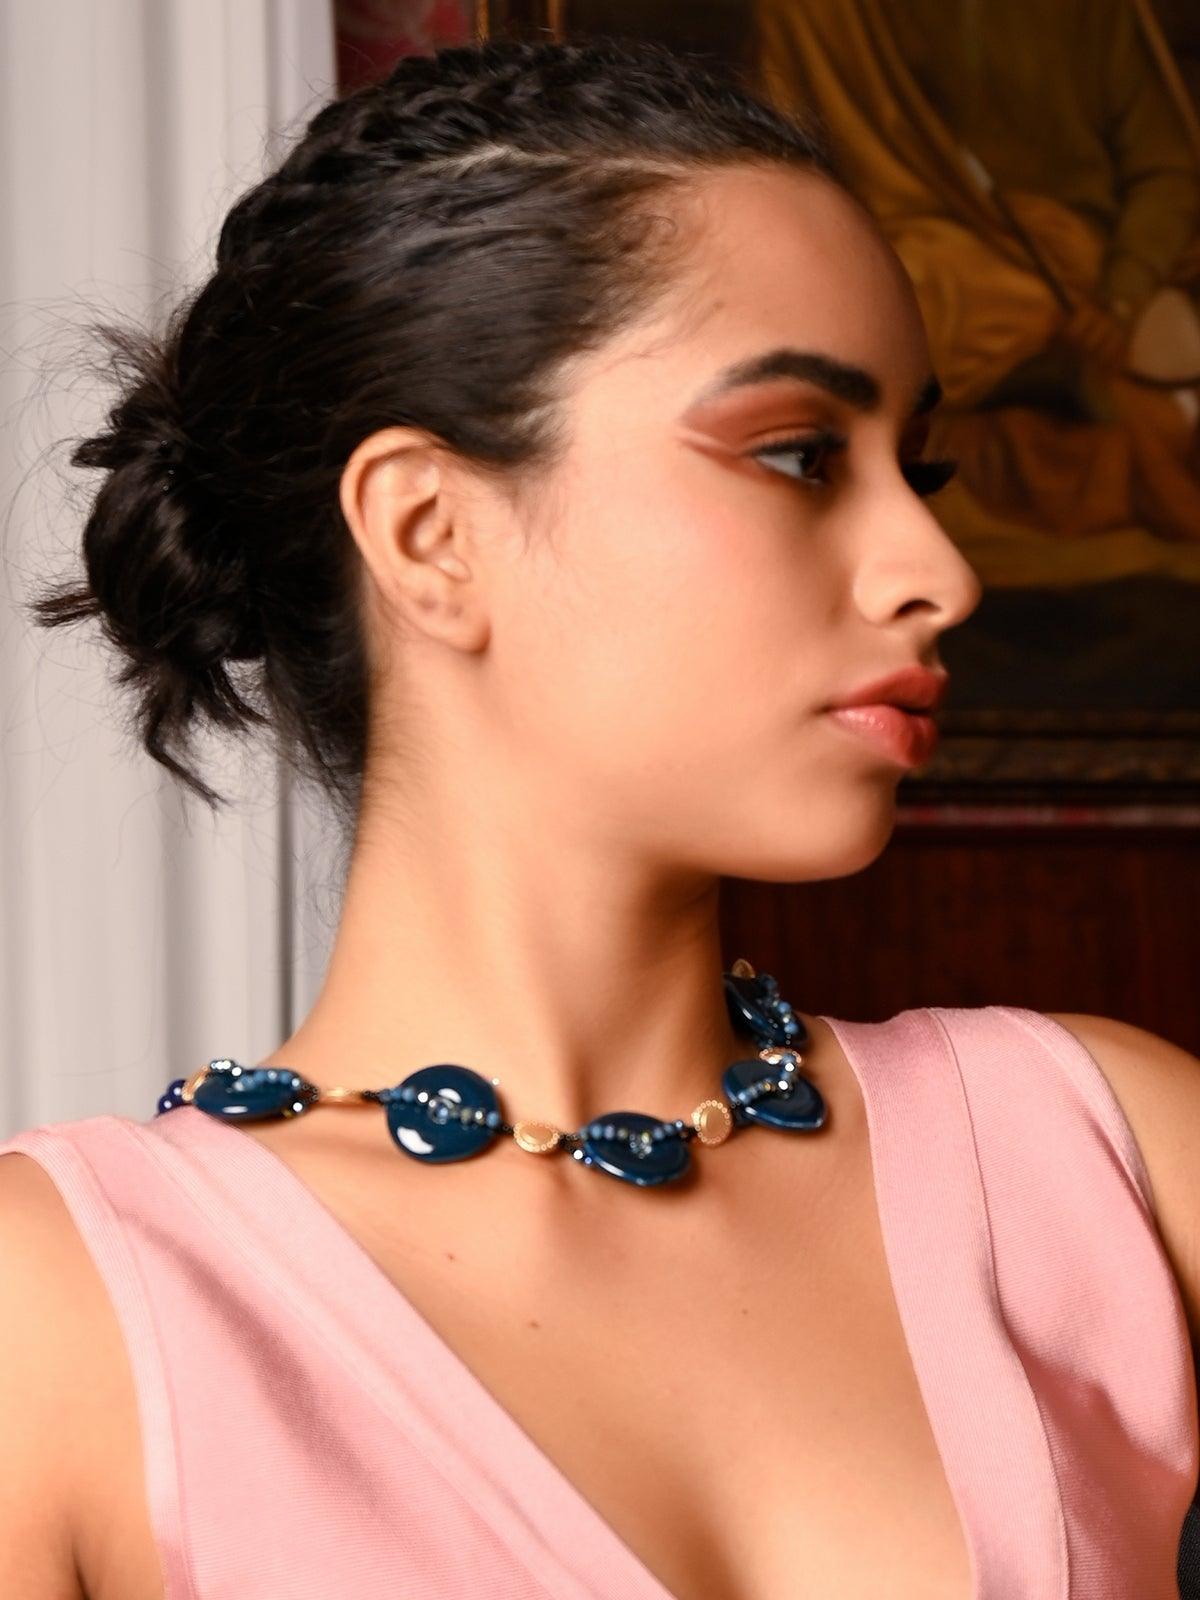 Women's Designer Blue Buttoned Boho Necklace - Odette